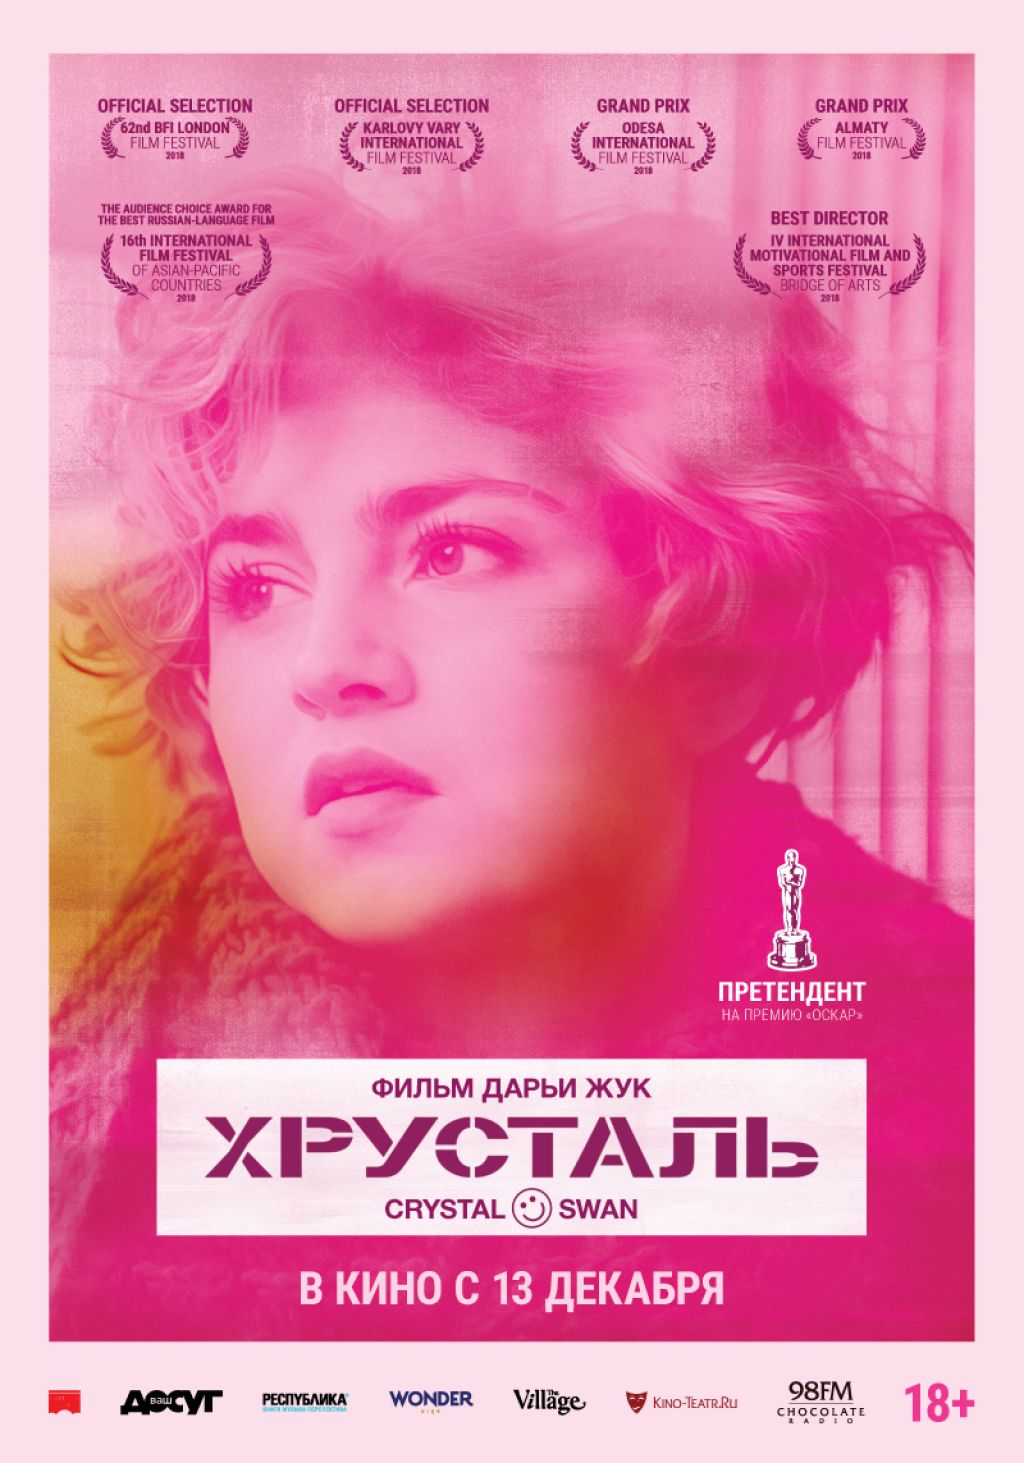 Рецензия на фильм «Хрусталь», выдвинутый на «Оскар» от Беларуси 